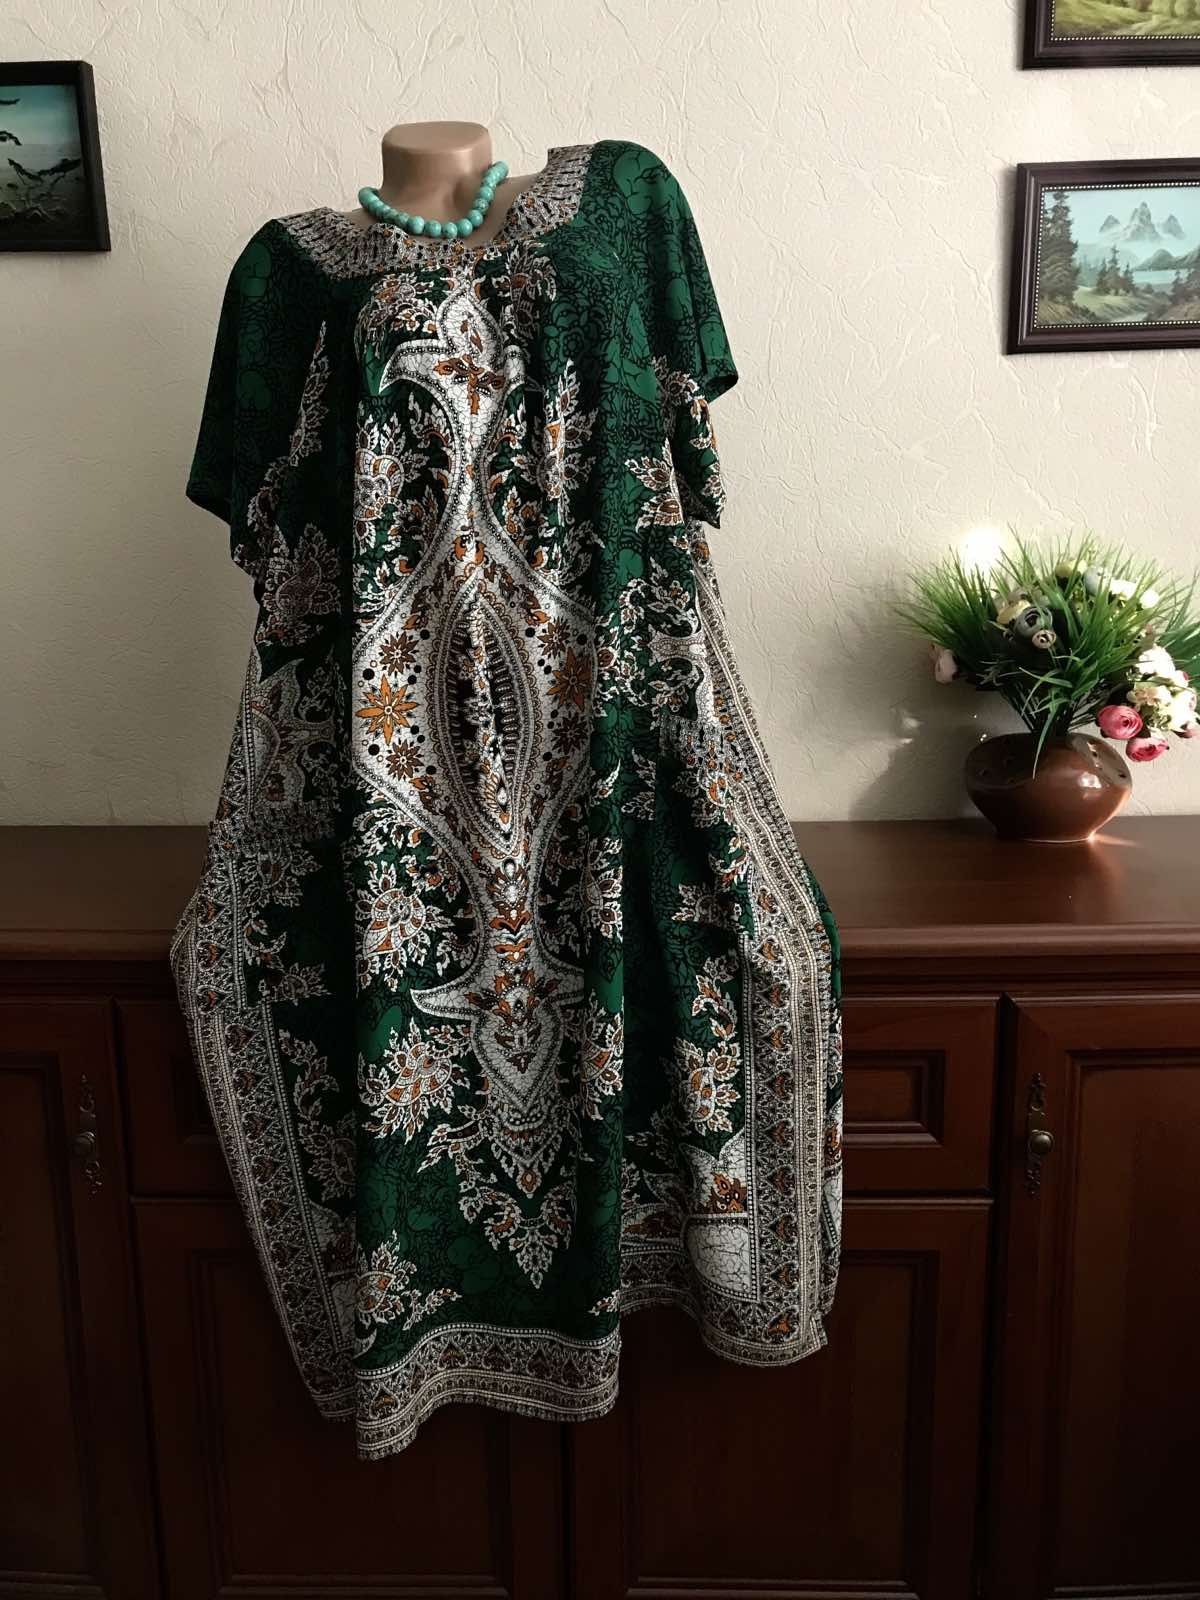 Воздушное легкое платье Натуральные ткани Батал  54-66р